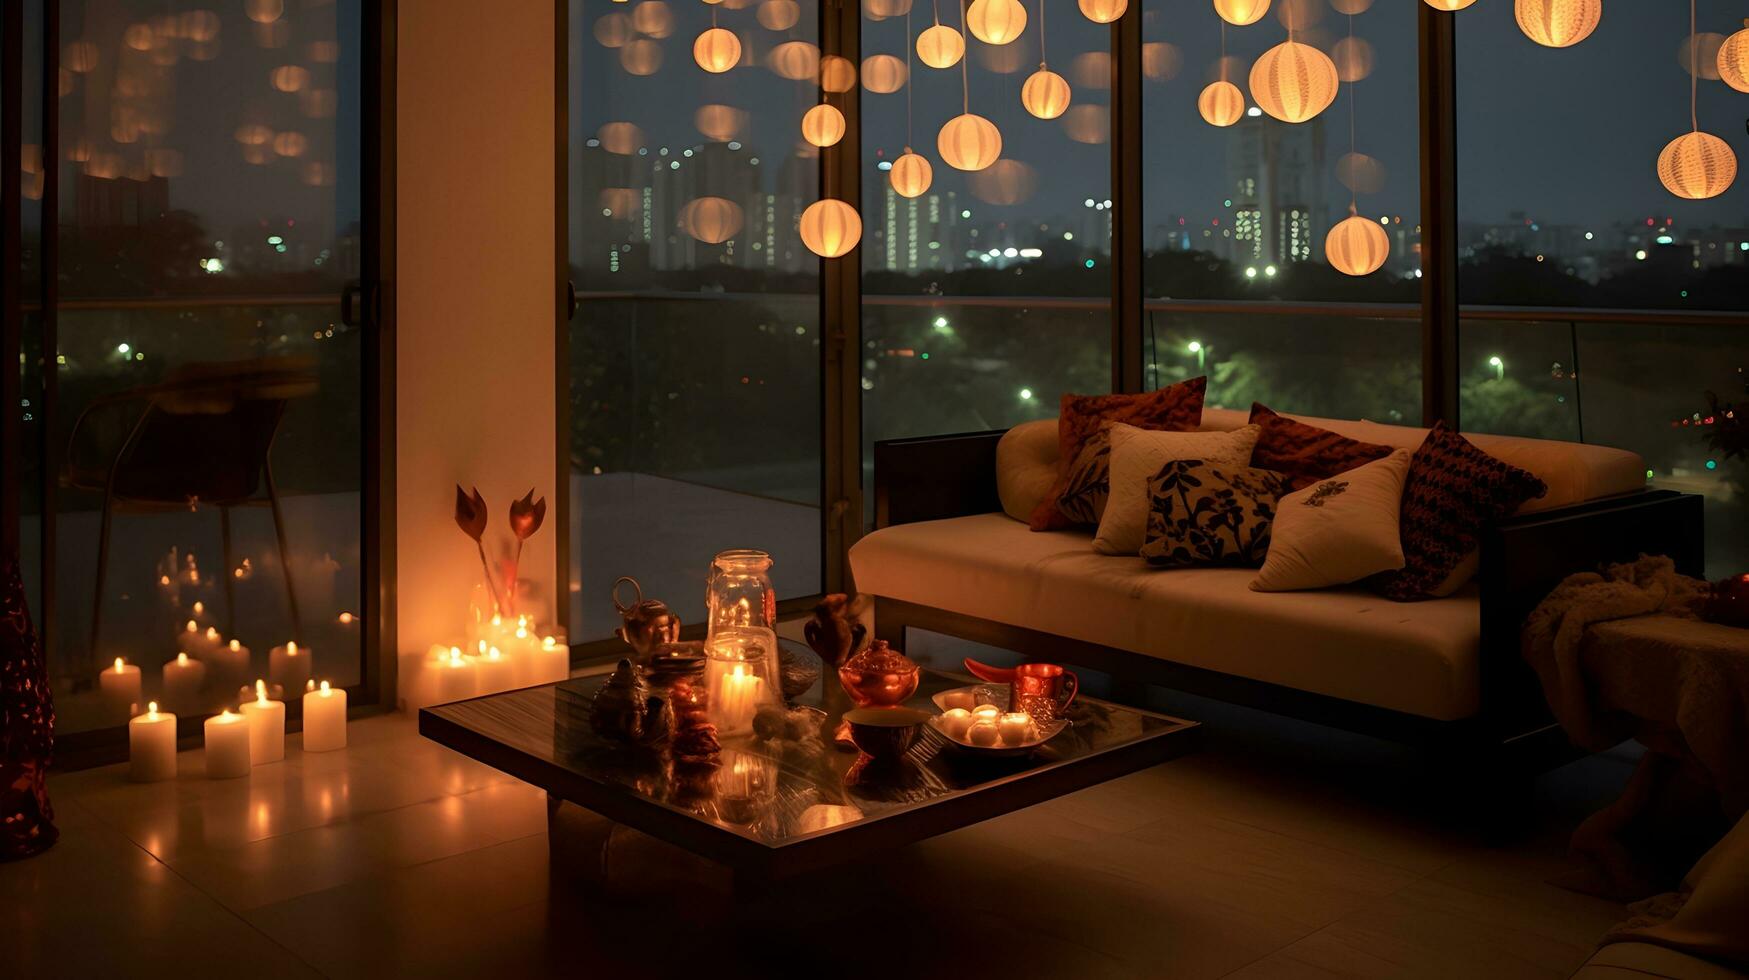 romantisch kaarslicht leven kamer, een knus mengsel van stad keer bekeken foto